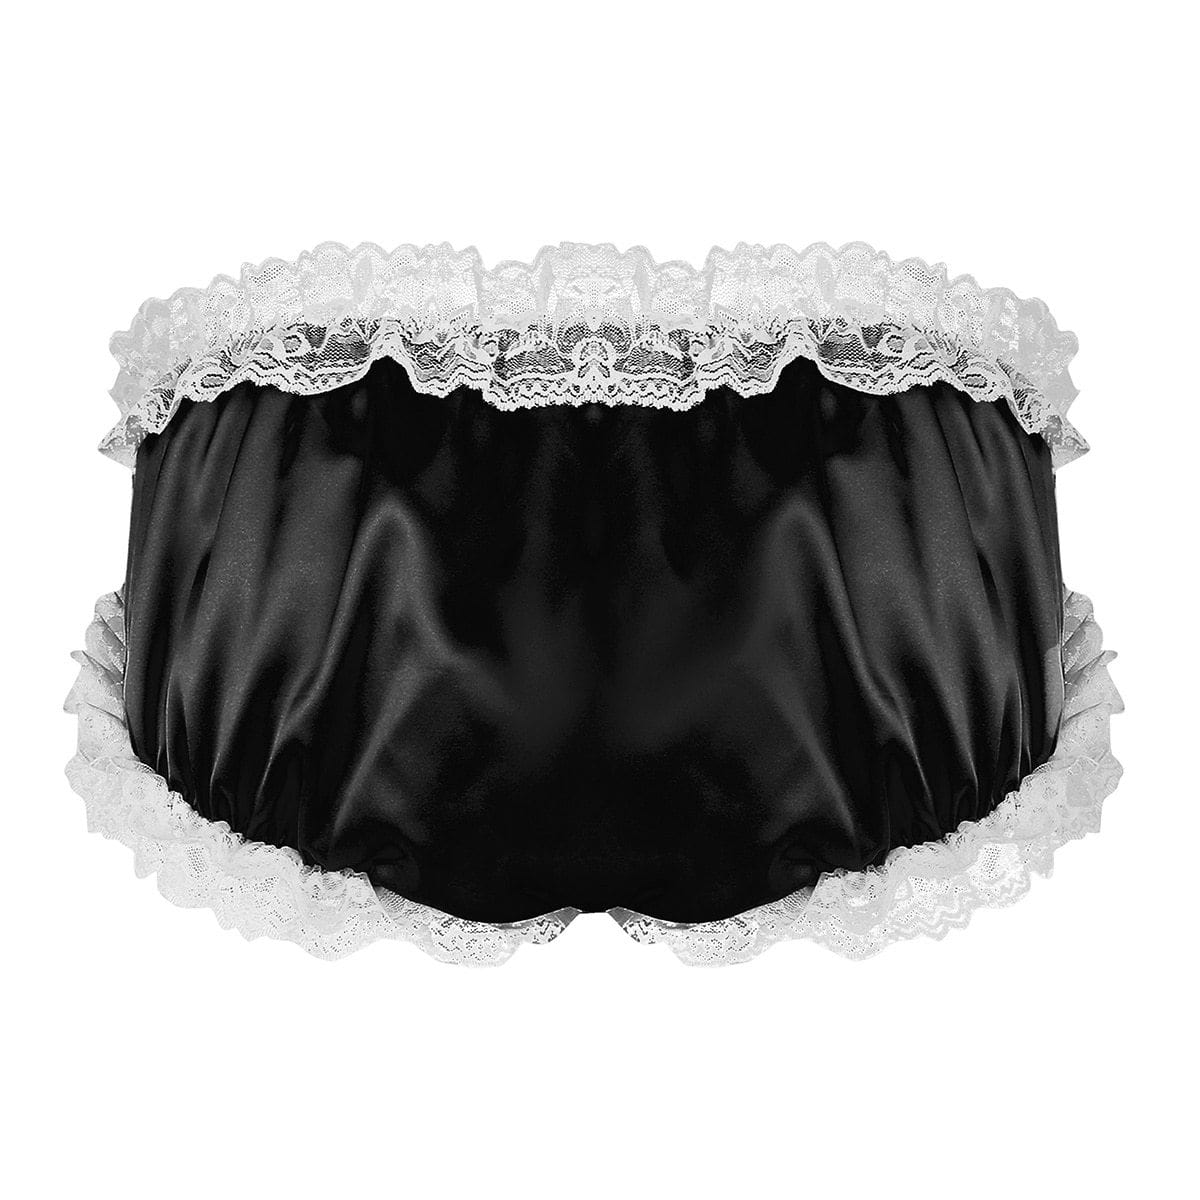 Men's High Cut Sissy Knickers Bloomers Briefs Underwear Panties